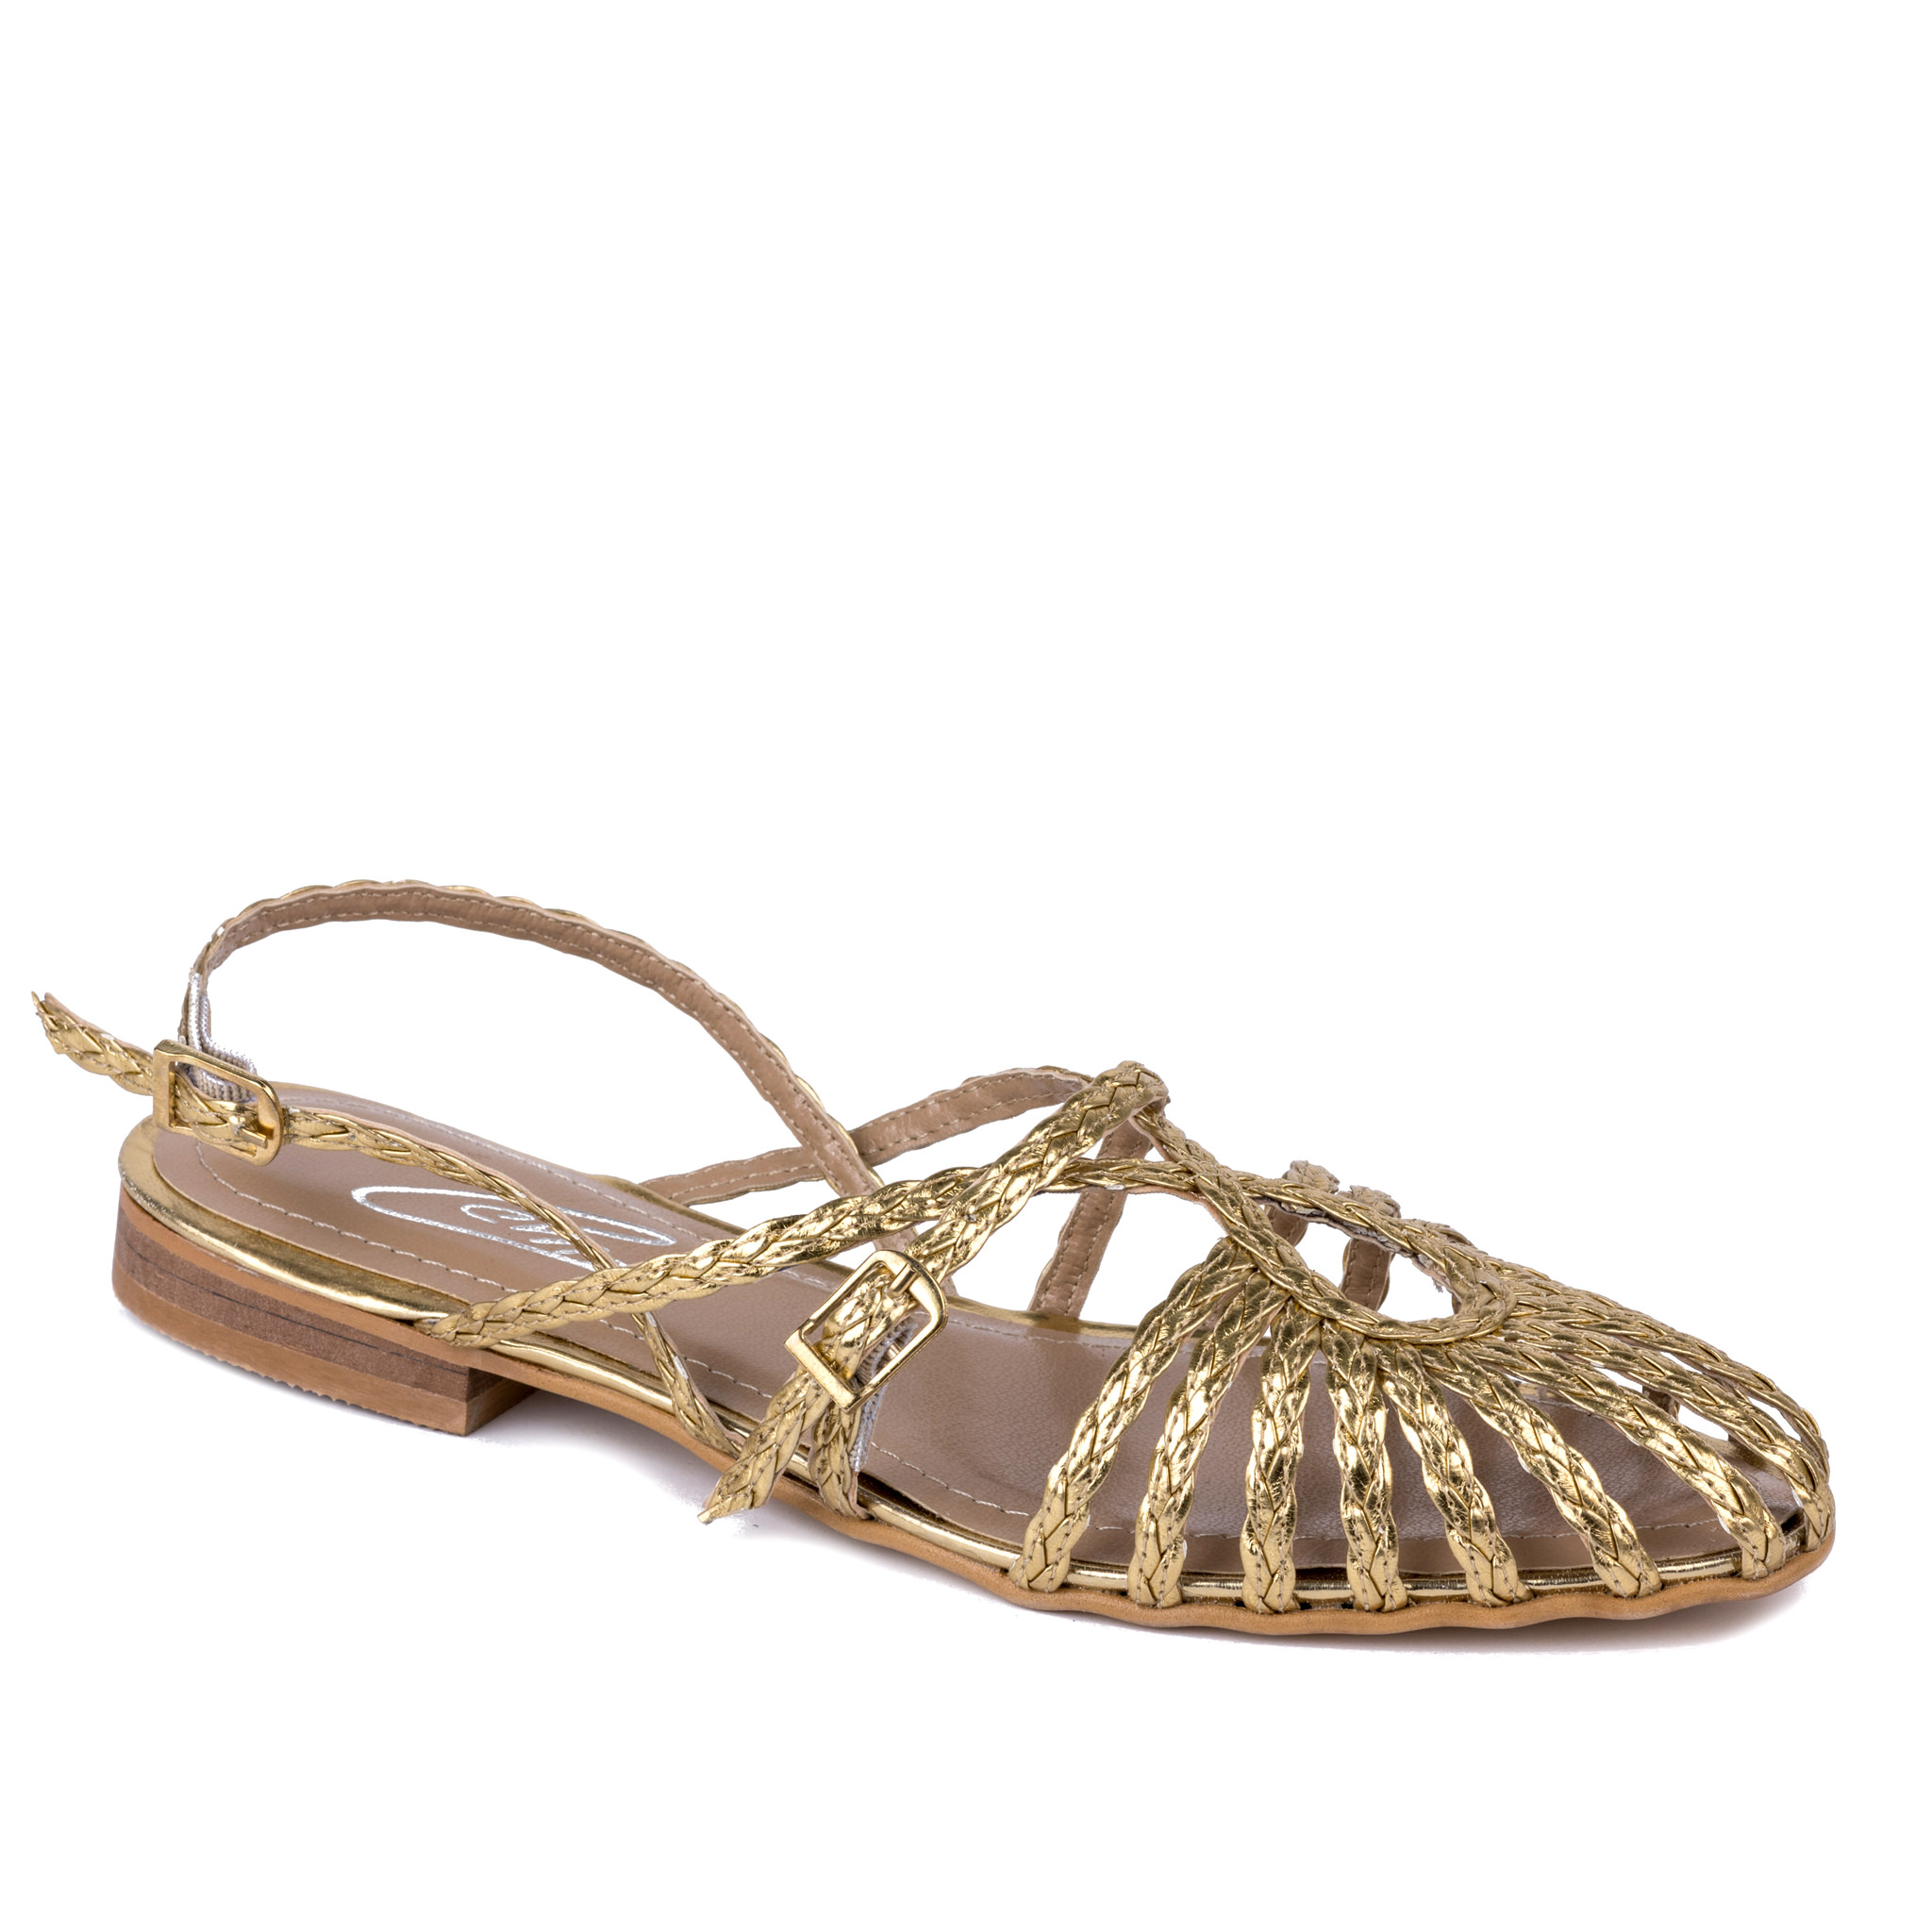 Women sandals A156 - GOLD